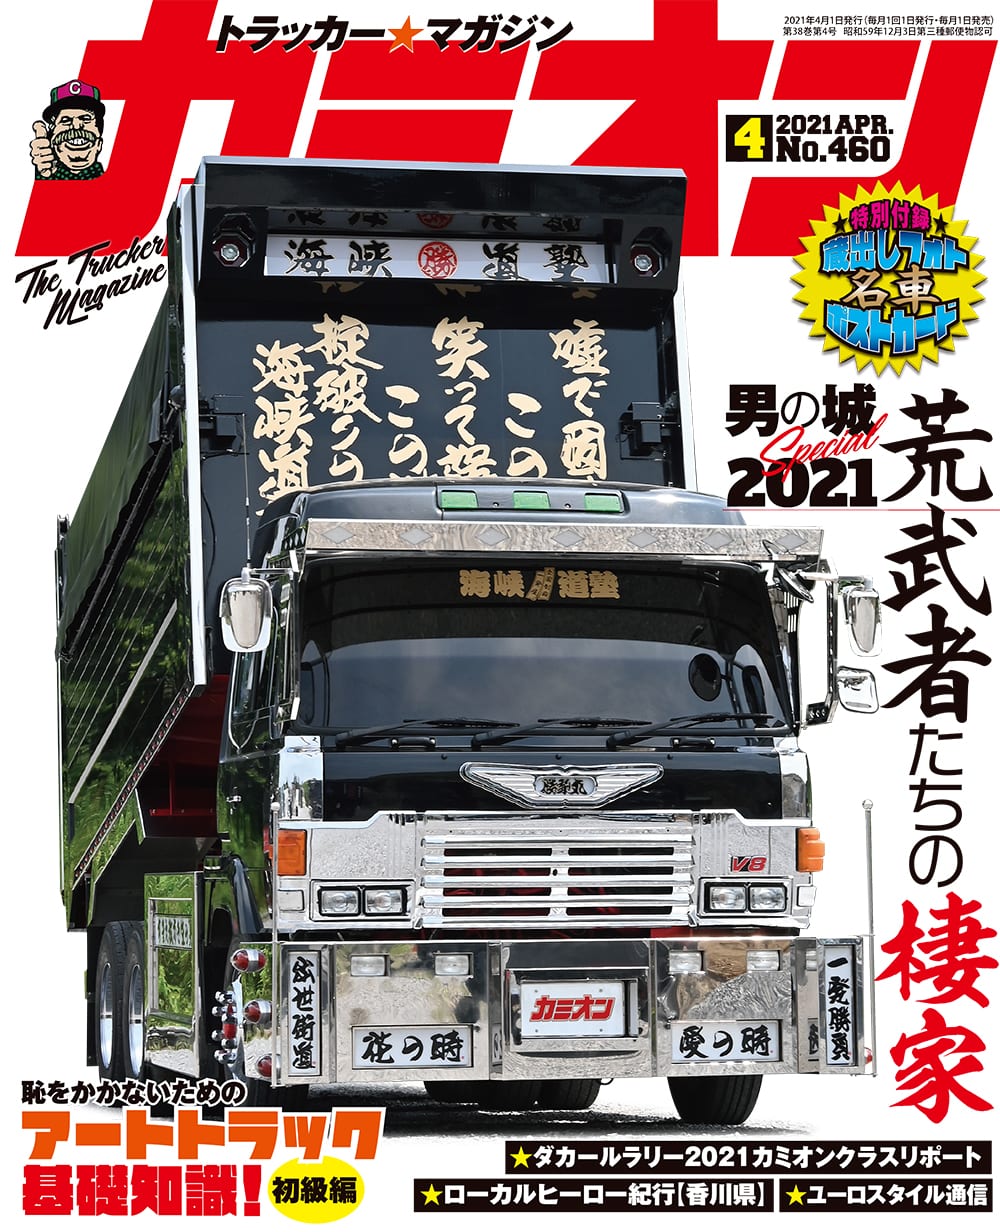 カミオン 2021年 4月号 vol.460 | 芸文社カタログサイト